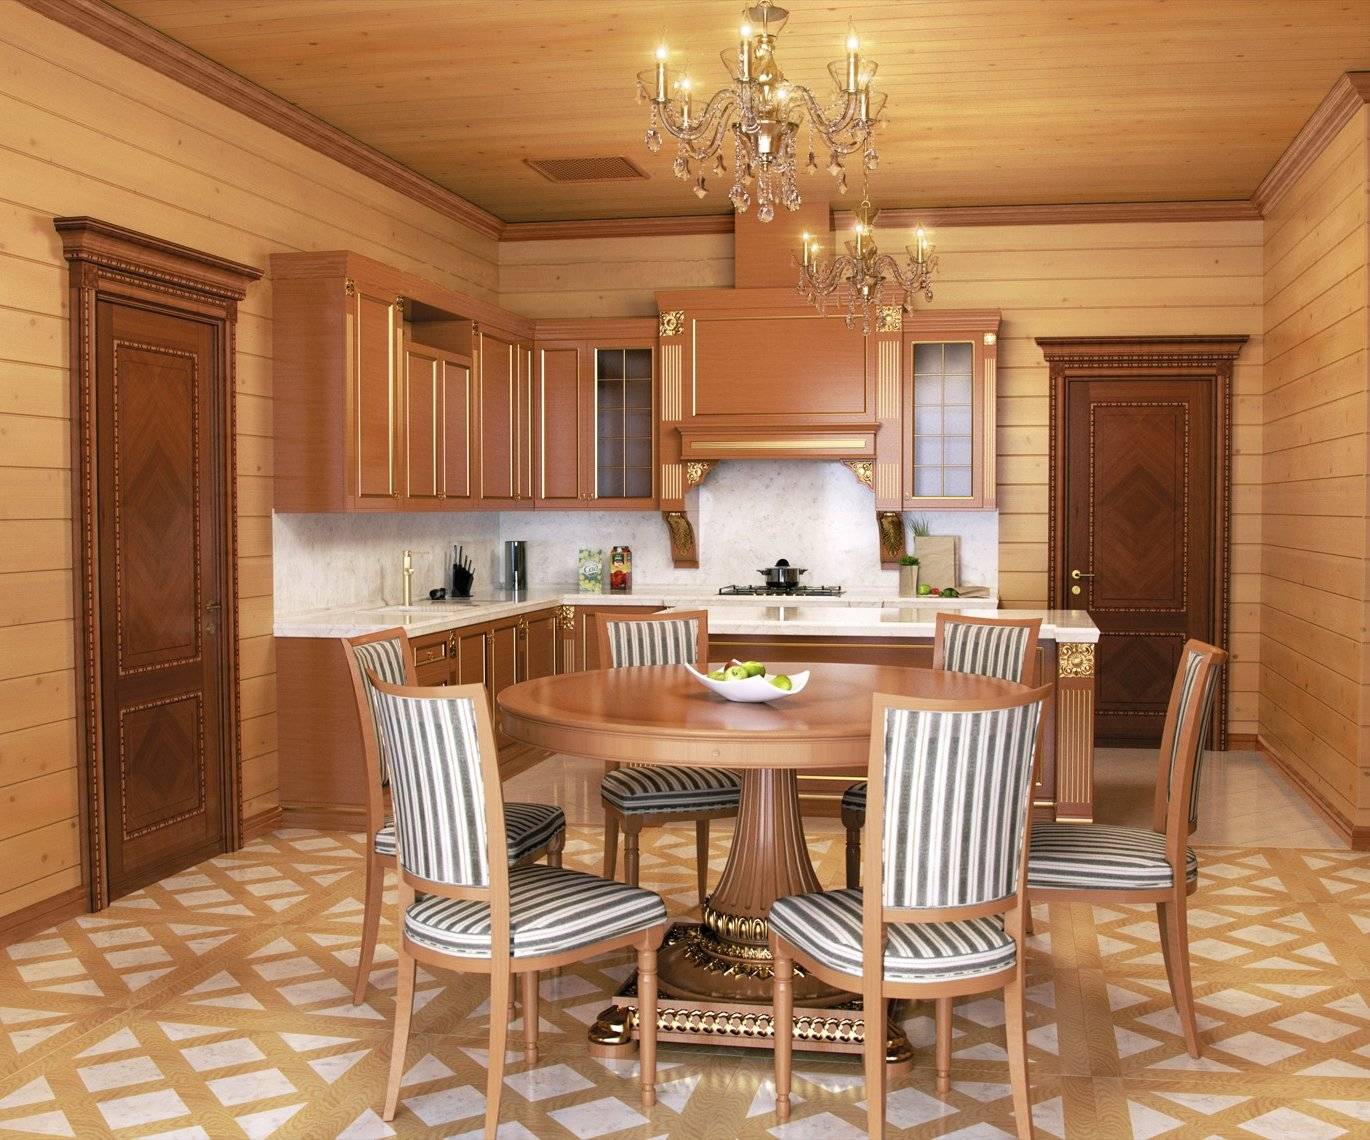 Кухня в деревянном доме из бруса: дизайн интерьера кухни-гостиной | дизайн и фото